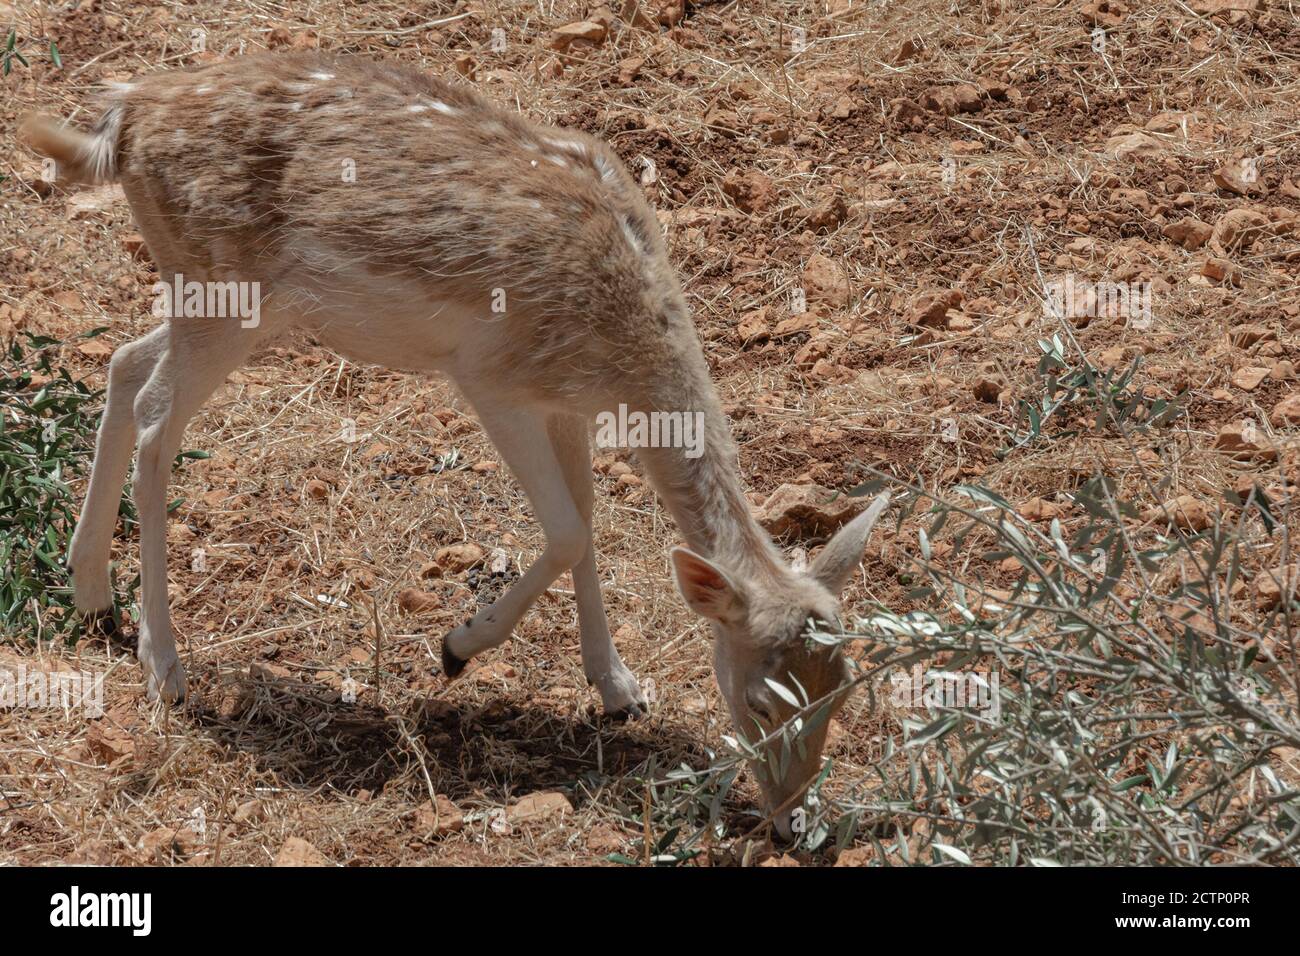 Ein weiblicher Hirsch ernährt sich auf steinigem Boden, Stockfoto Stockfoto